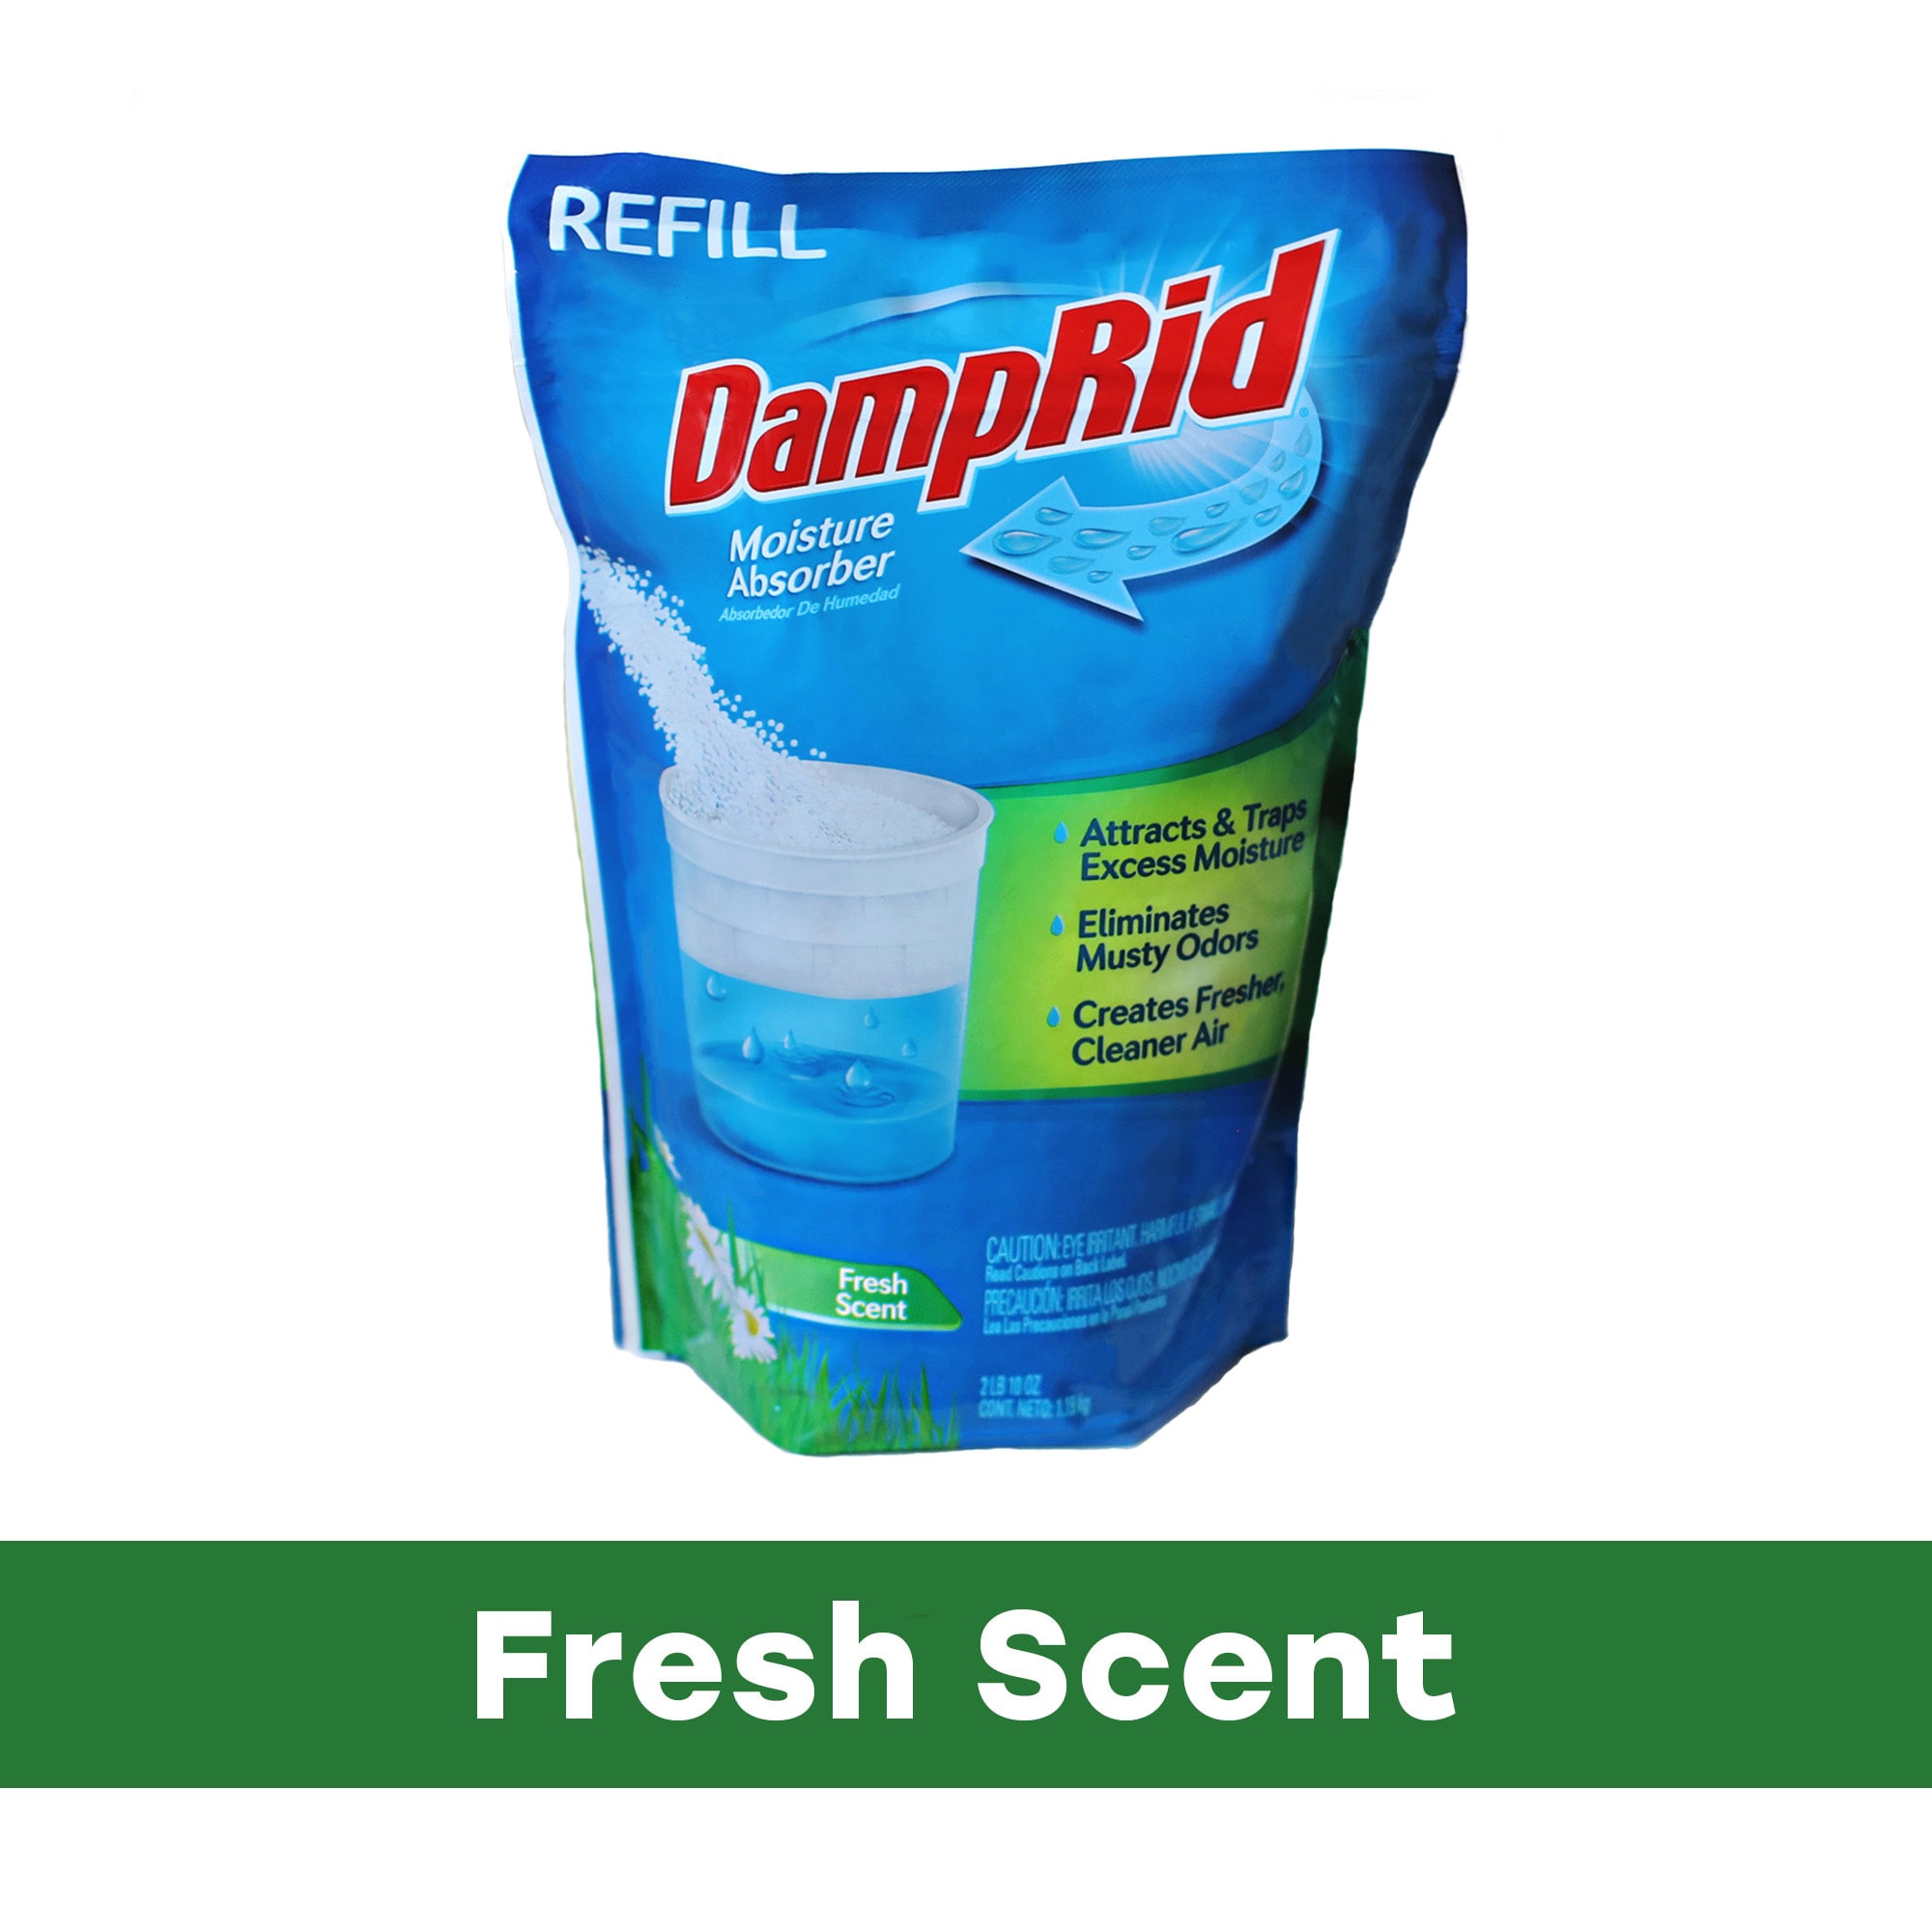 DampRid Easy-Fill 10.5 Oz. Fragrance Free Moisture Absorber Refill